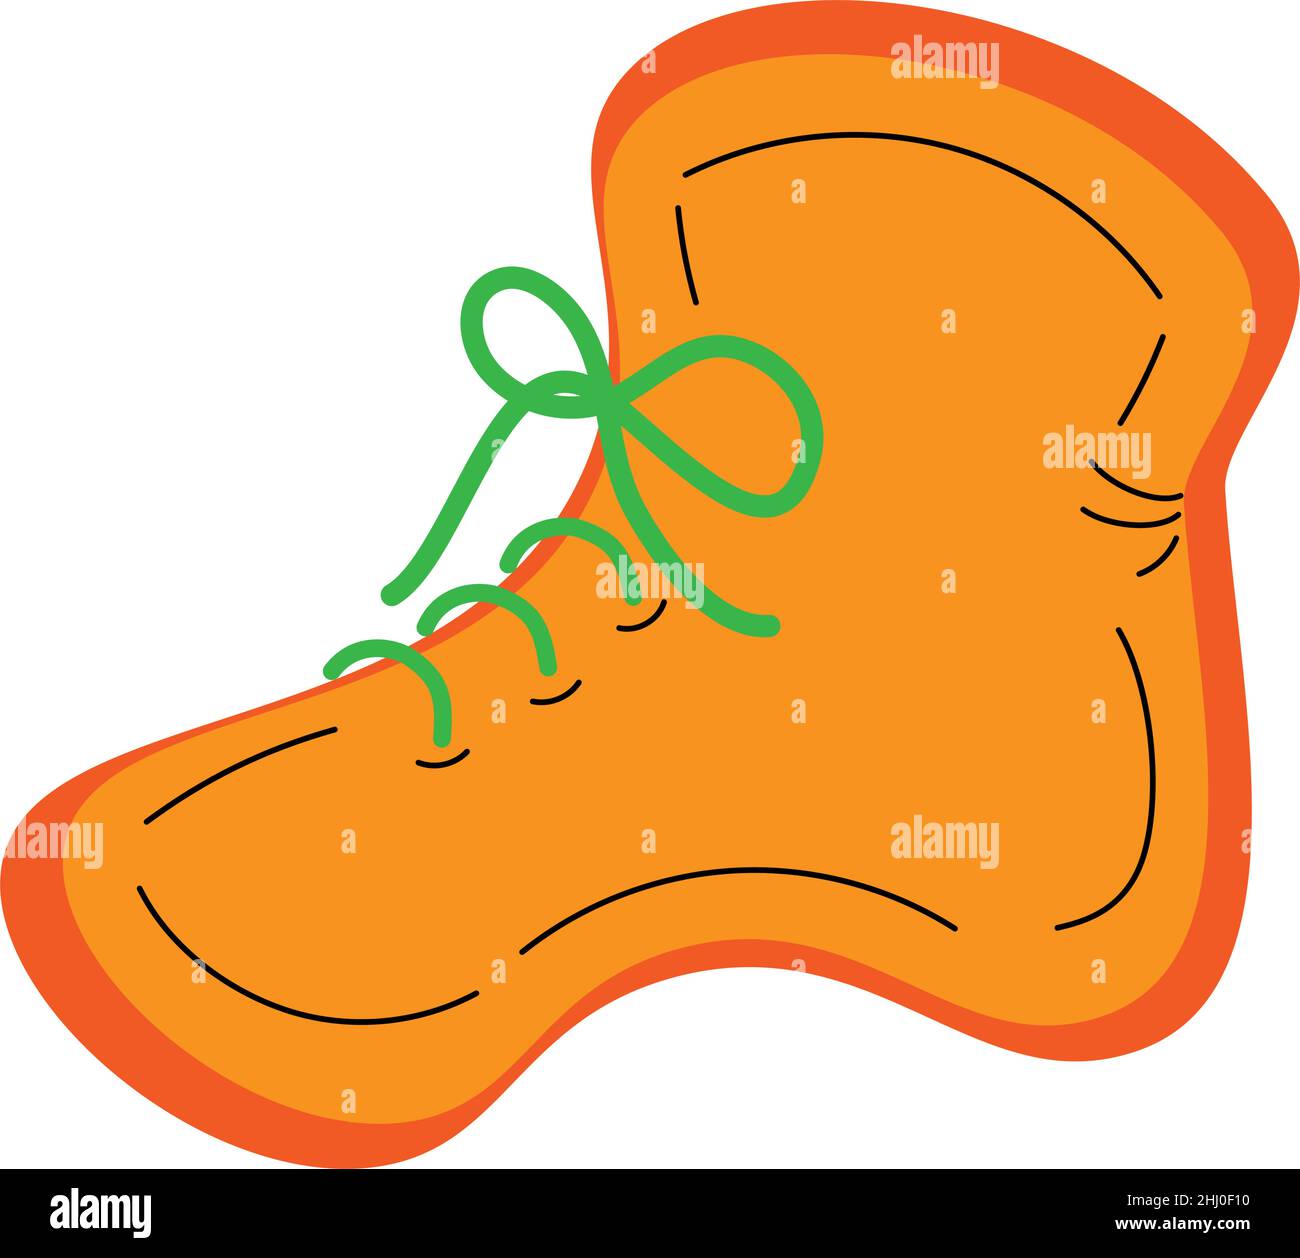 Handgezeichnetes Bild von Schuhen in der Nebensaison in orangefarbenen Farbtönen mit grünen Schnürsenkeln im minimalistischen Cartoon-Stil. Isolieren. Lifestyle. Vektorgrafik. Stock Vektor